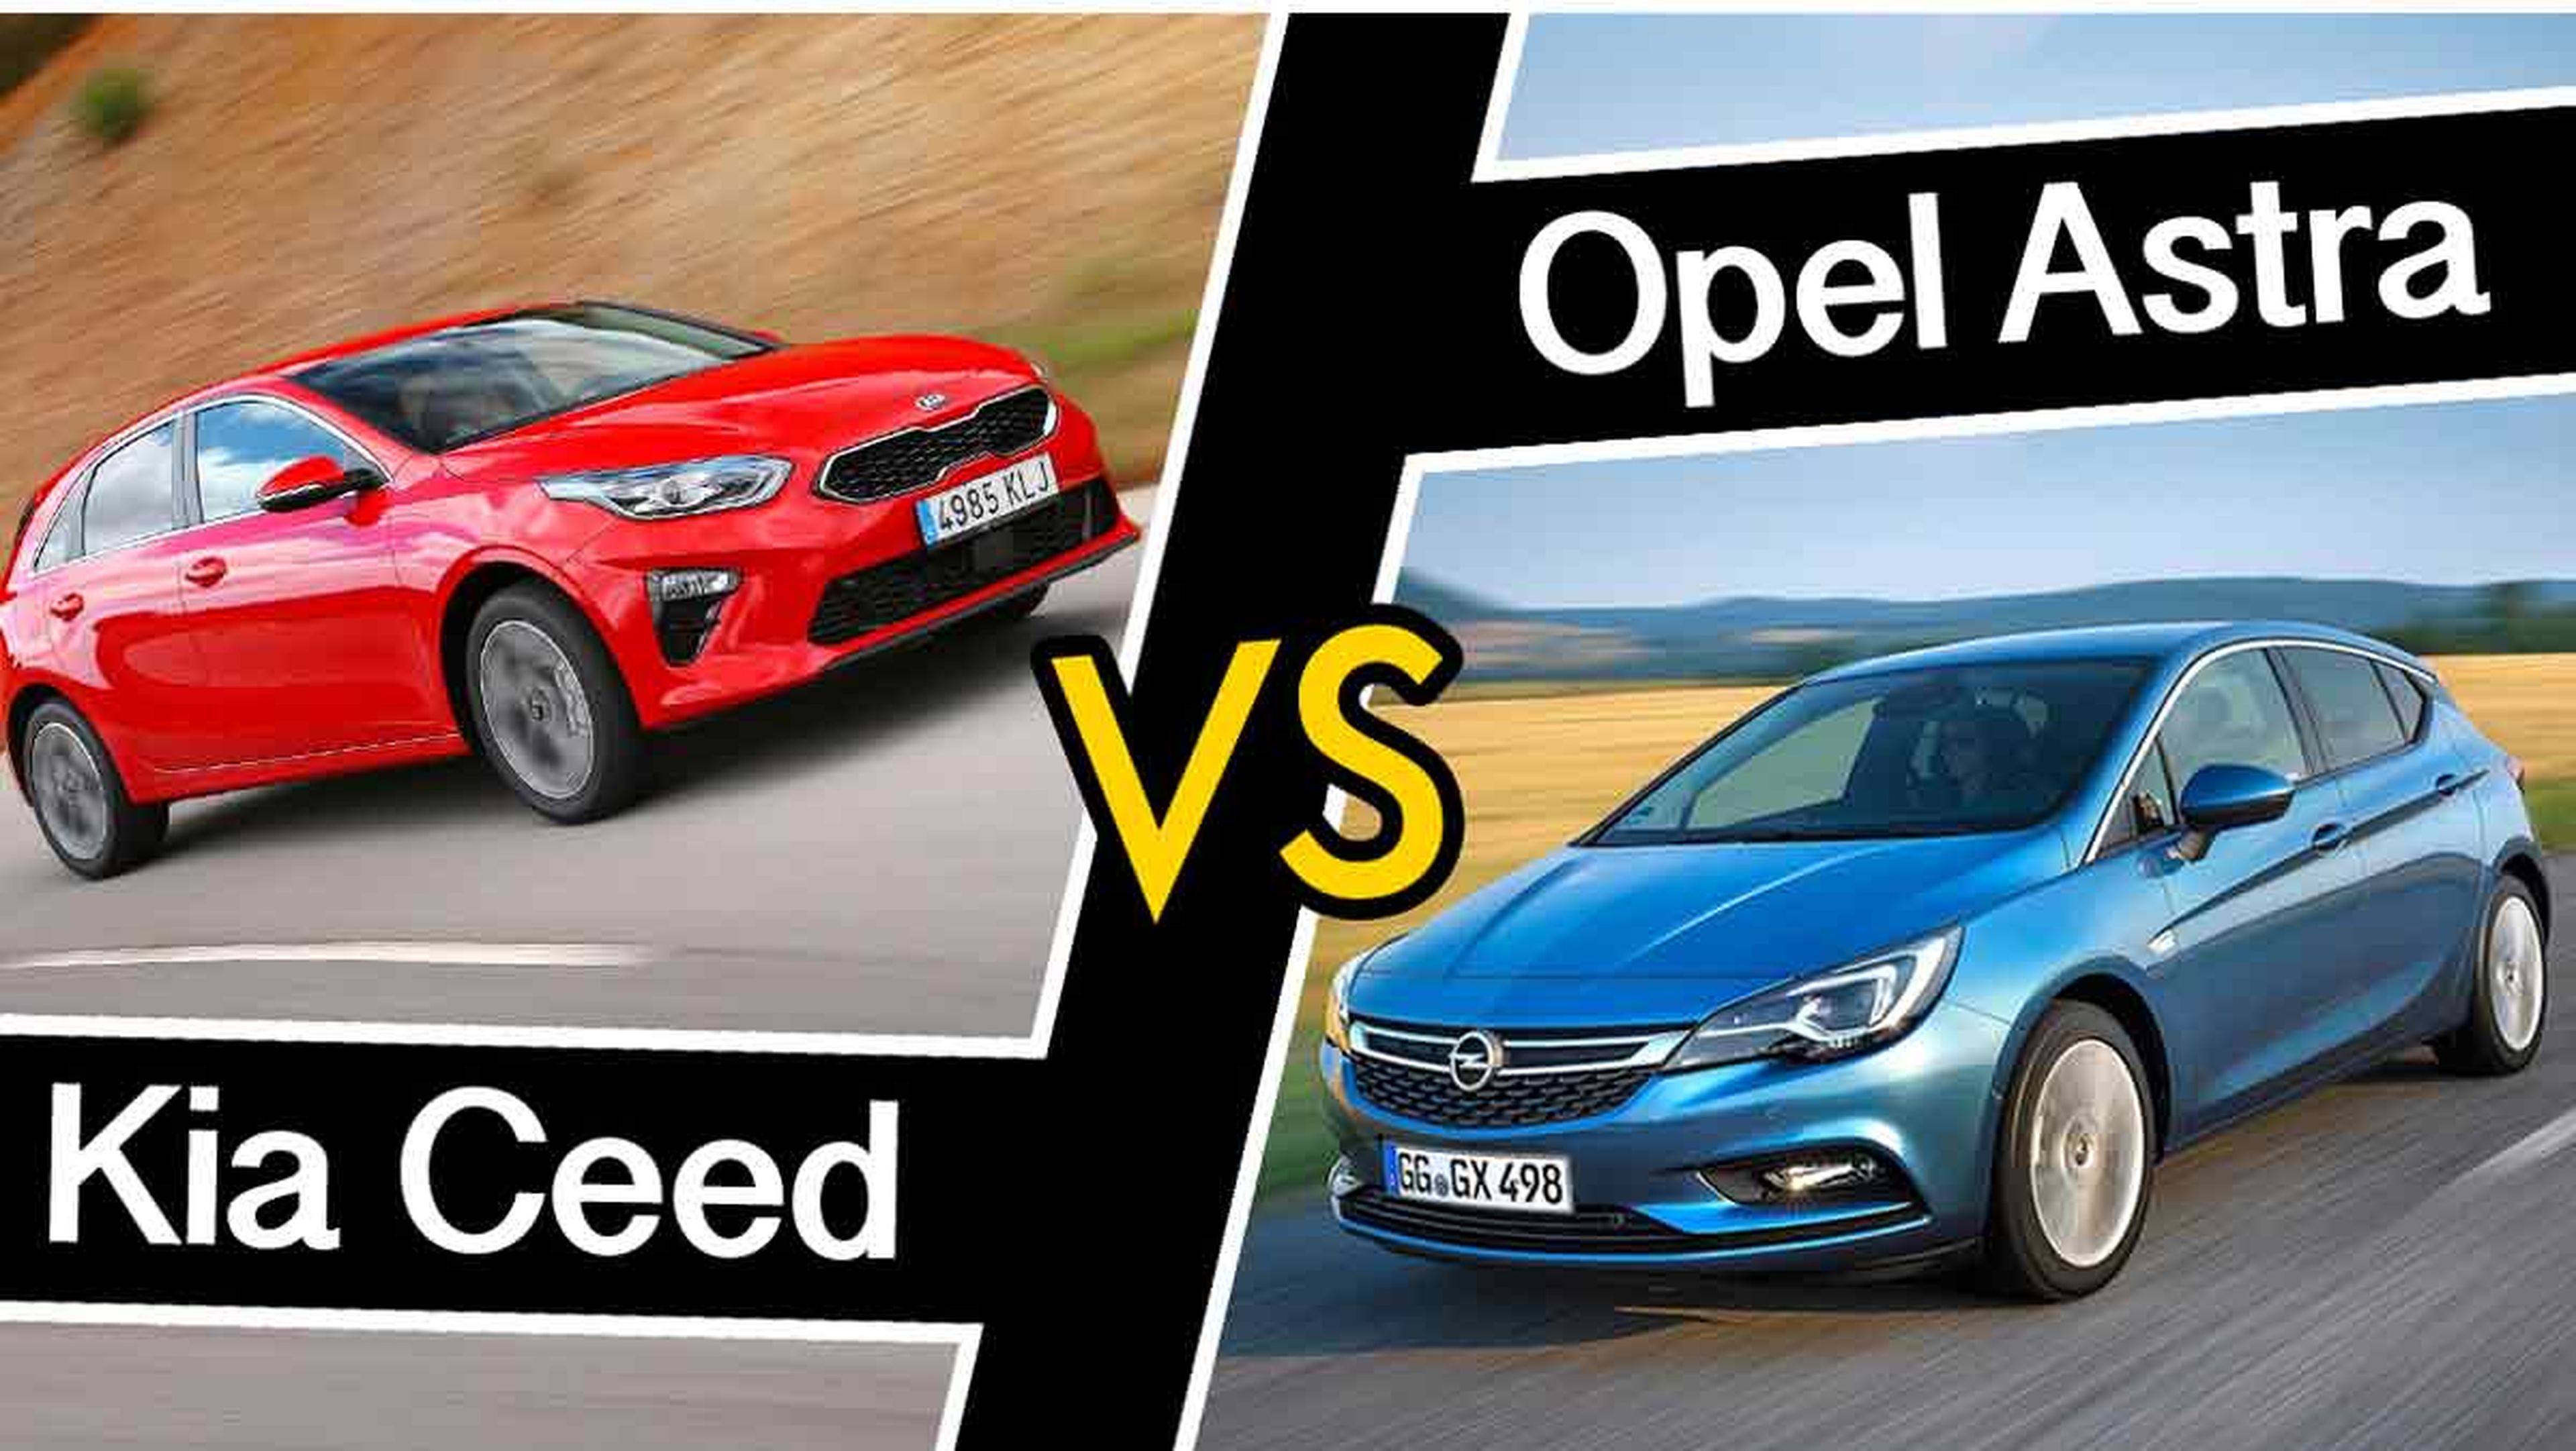 Kia Ceed vs Opel Astra